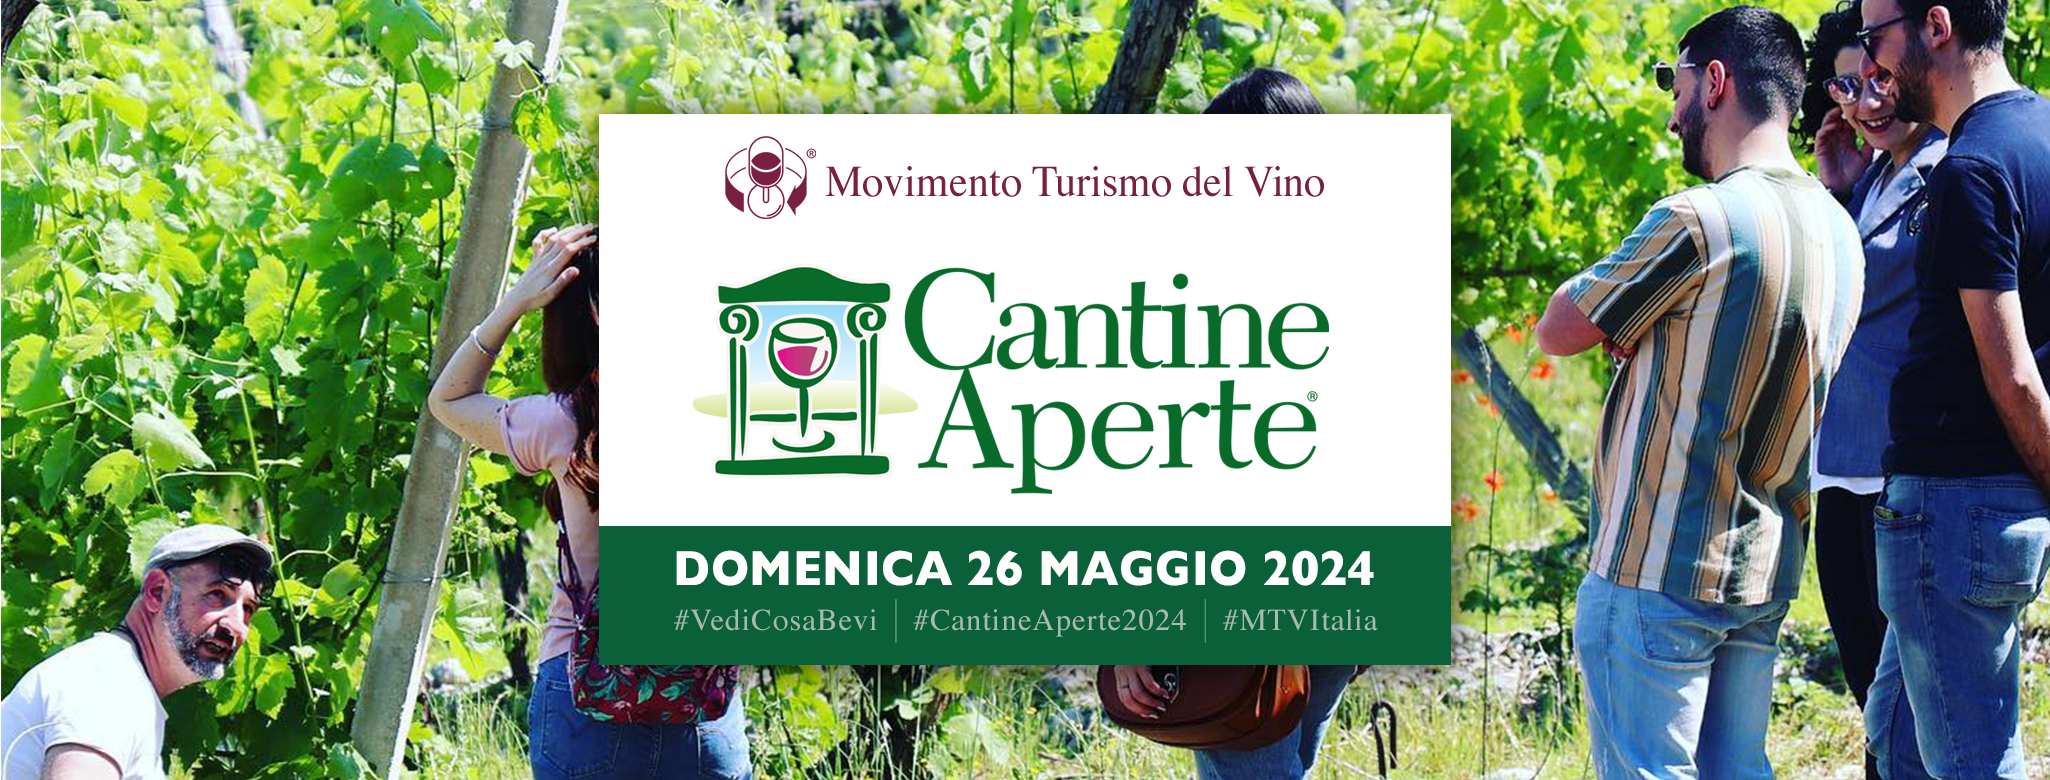 Cantine Aperte / Domenica 26 Maggio 2024